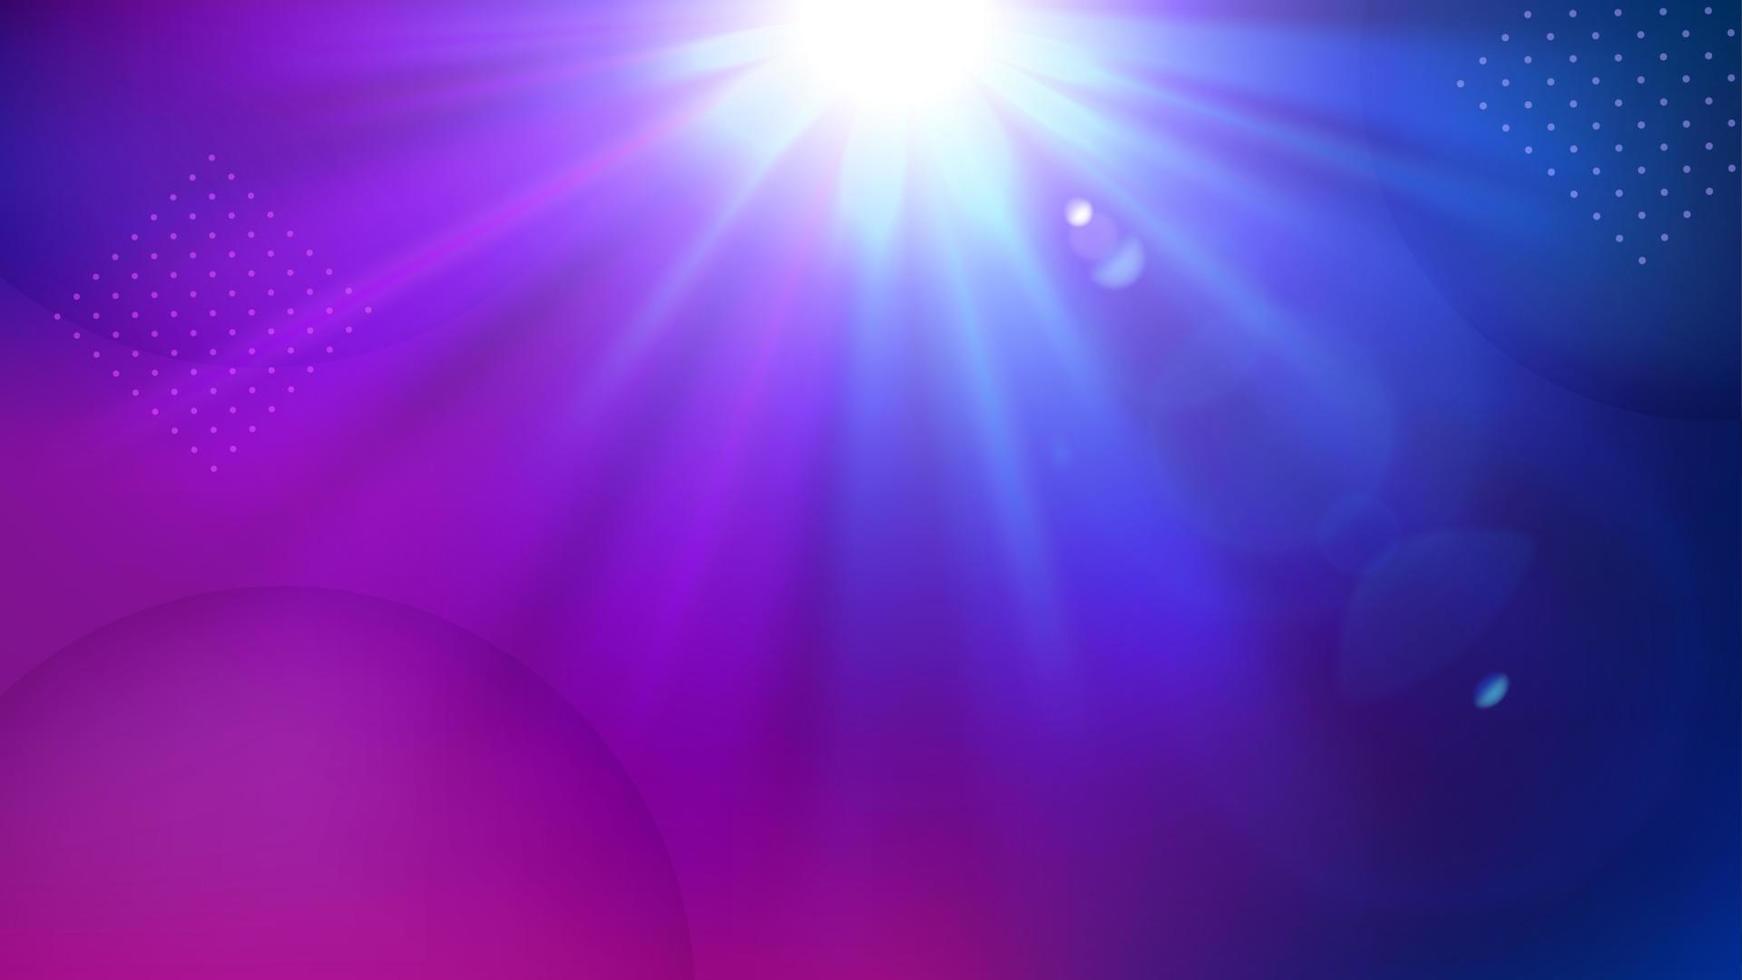 Violet Light Shining Background, Elegant Illuminated Light. Widescreen Vector Illustration